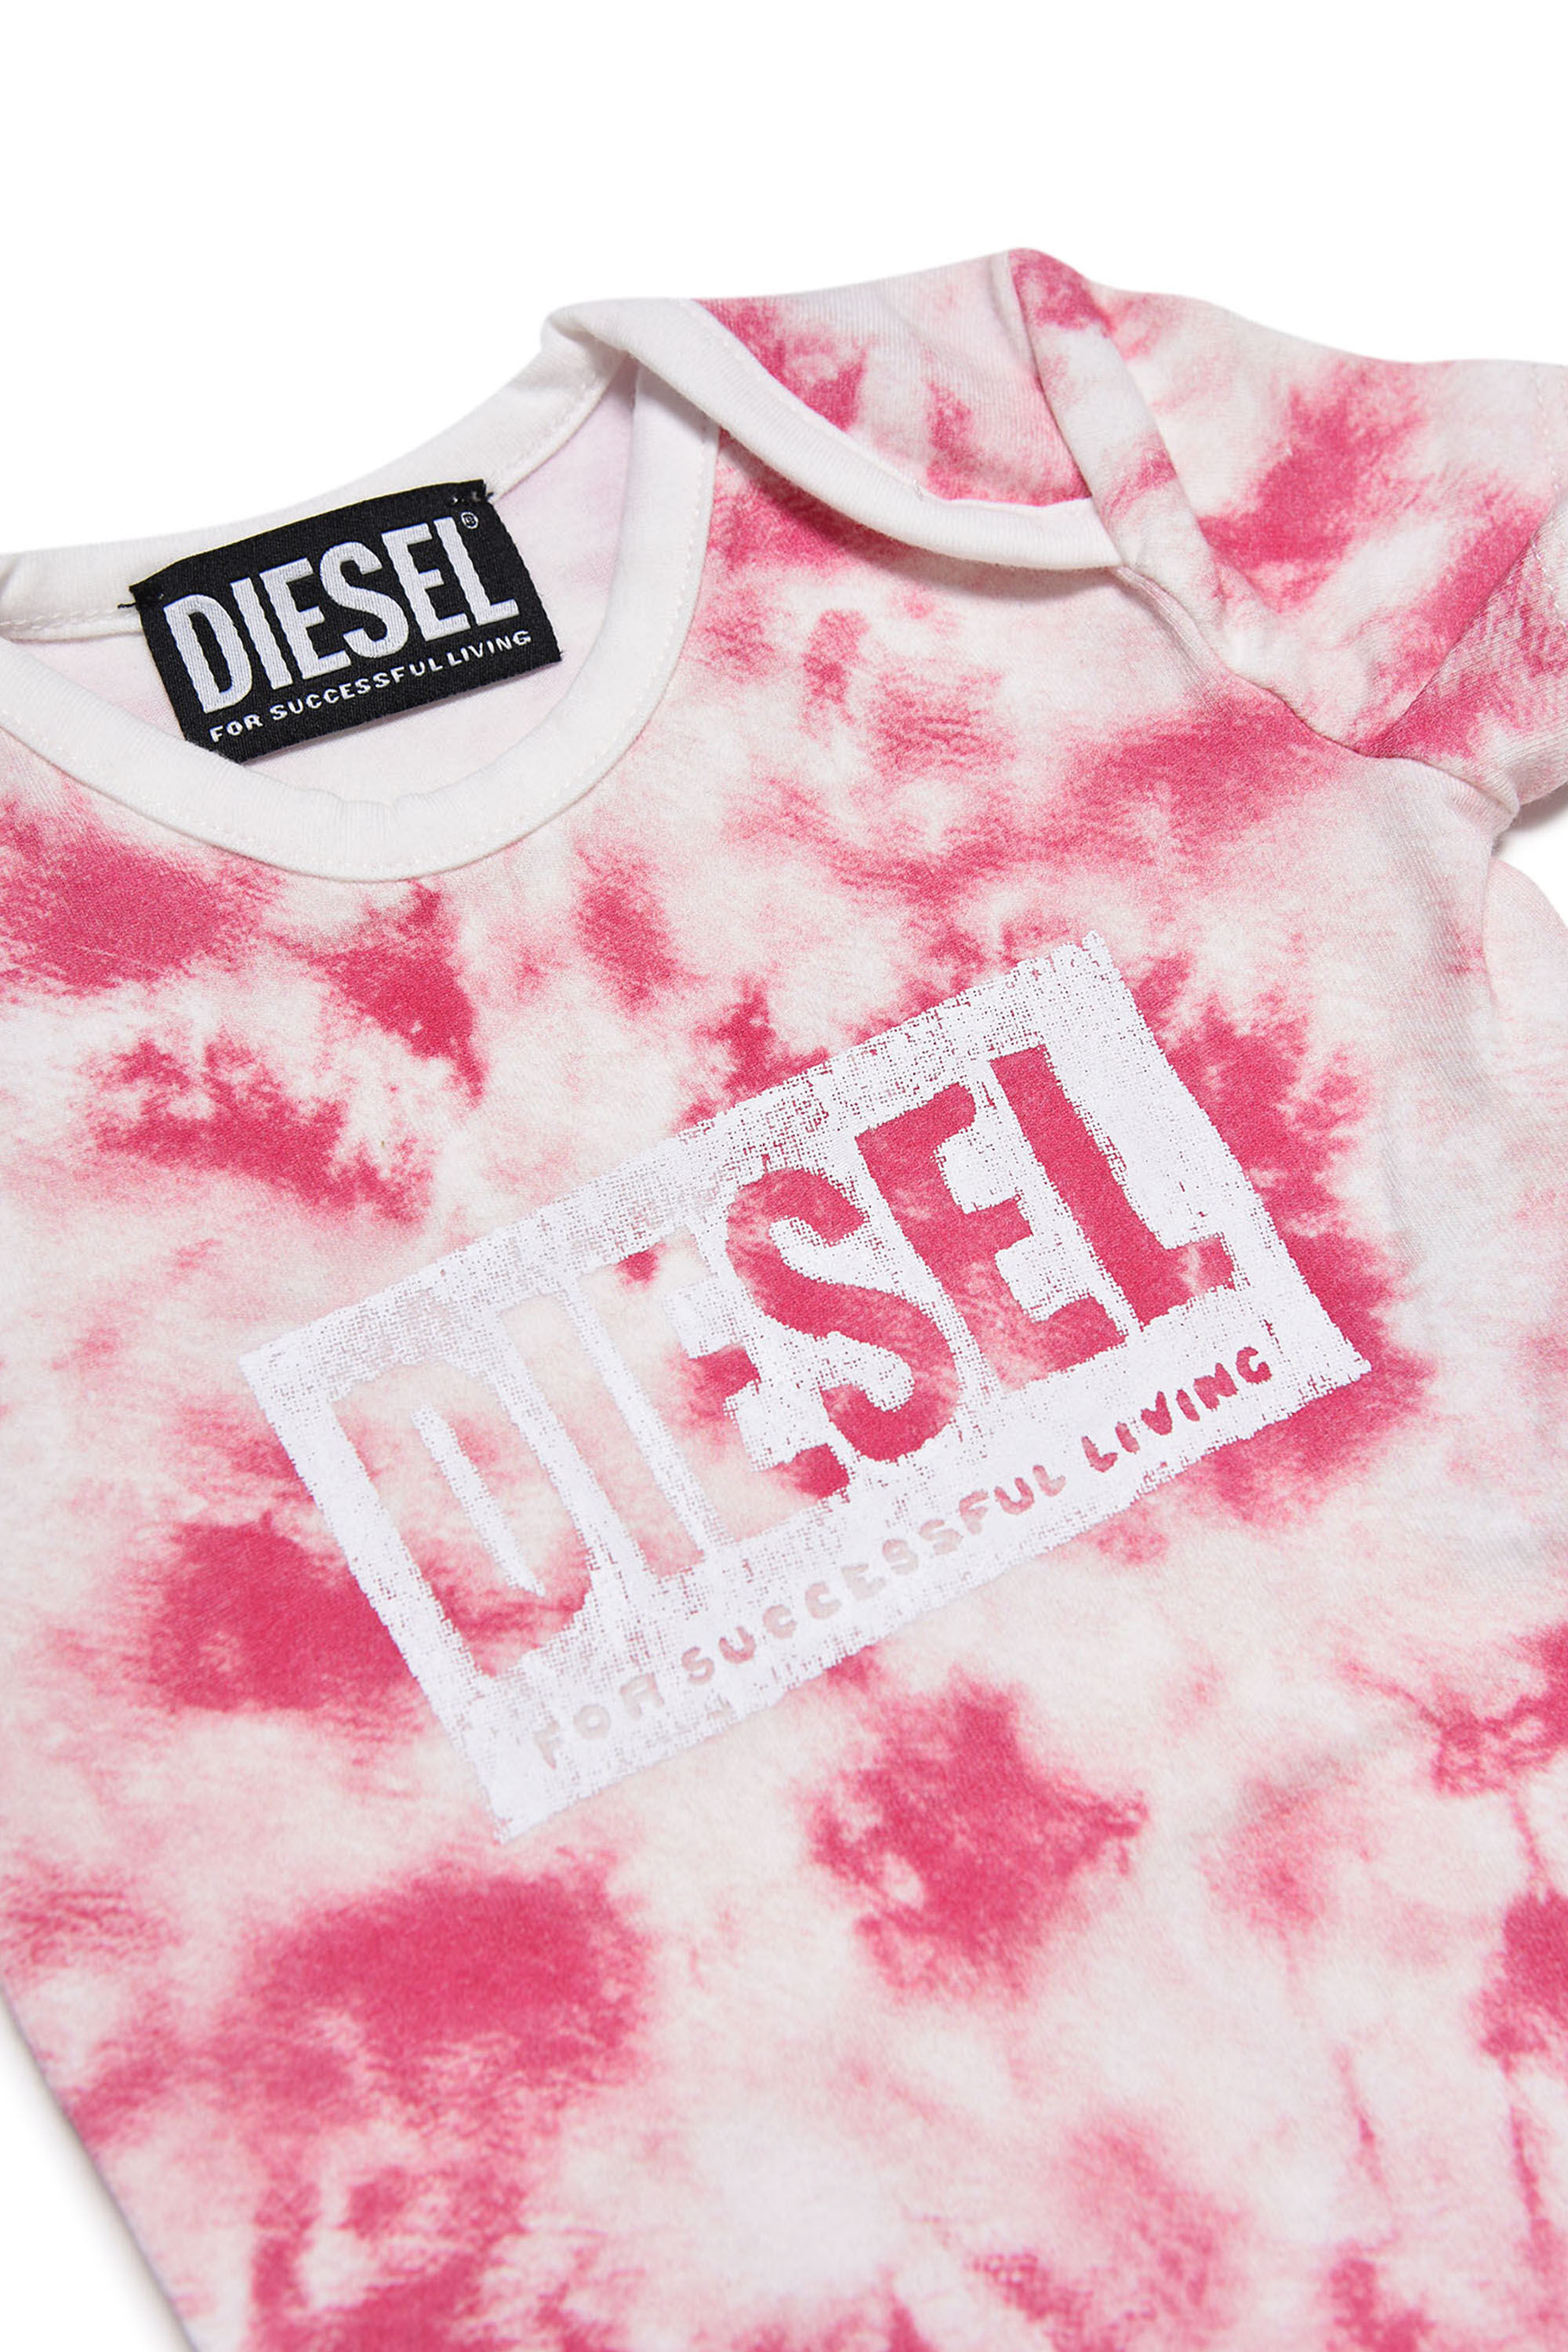 Diesel - UGY-NB, White/Pink - Image 3